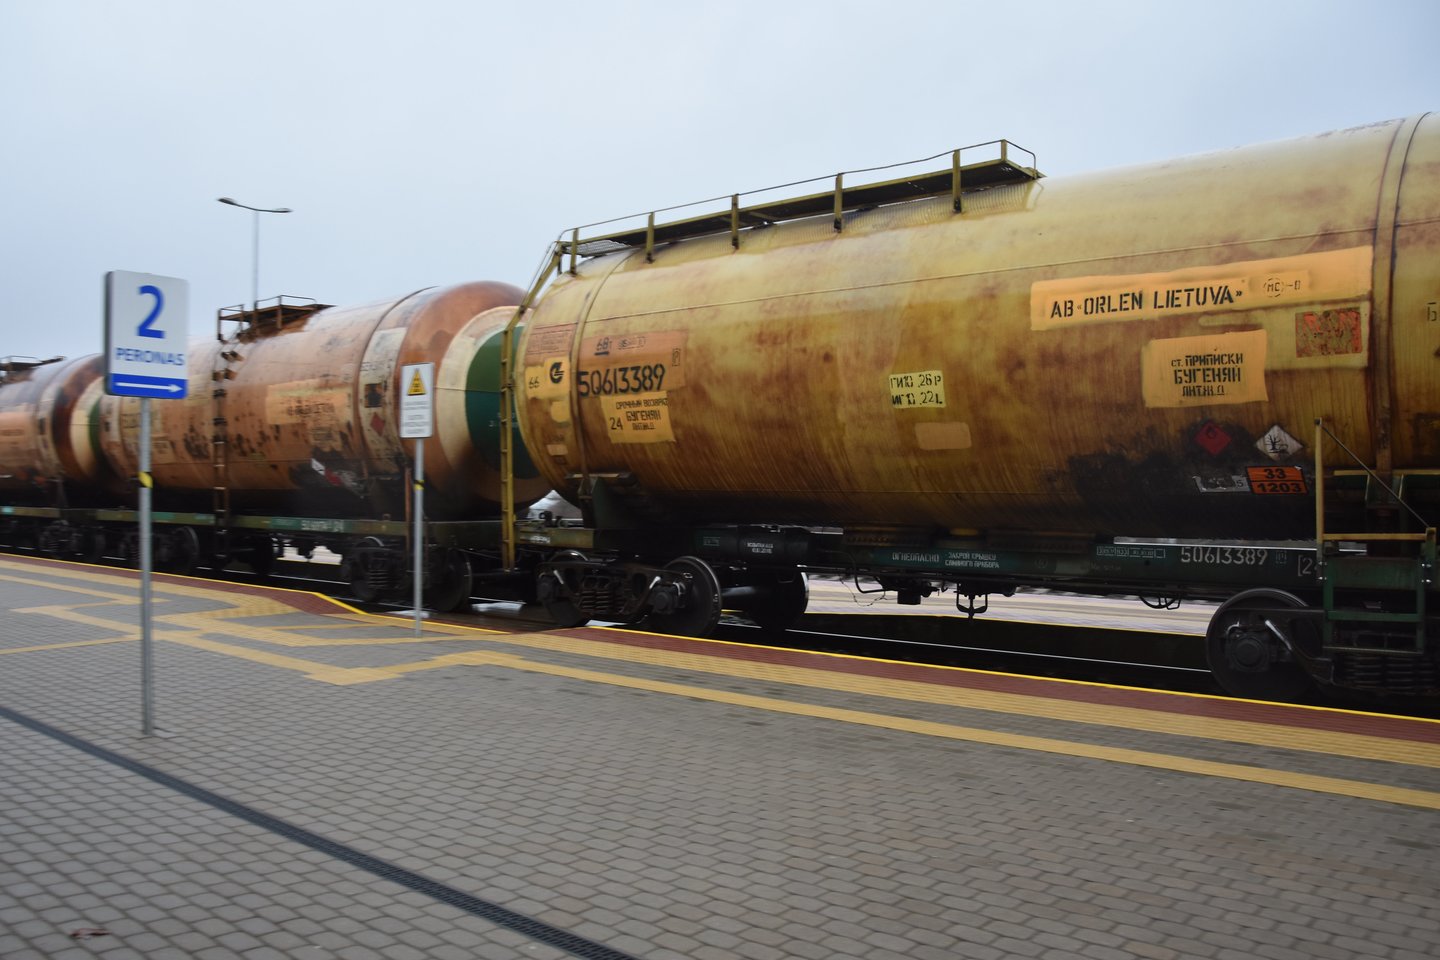 Pagrindinis KN krovinių srautas yra „Orlen Lietuva“ naftos produktai.<br> A.Srėbalienės nuotr.